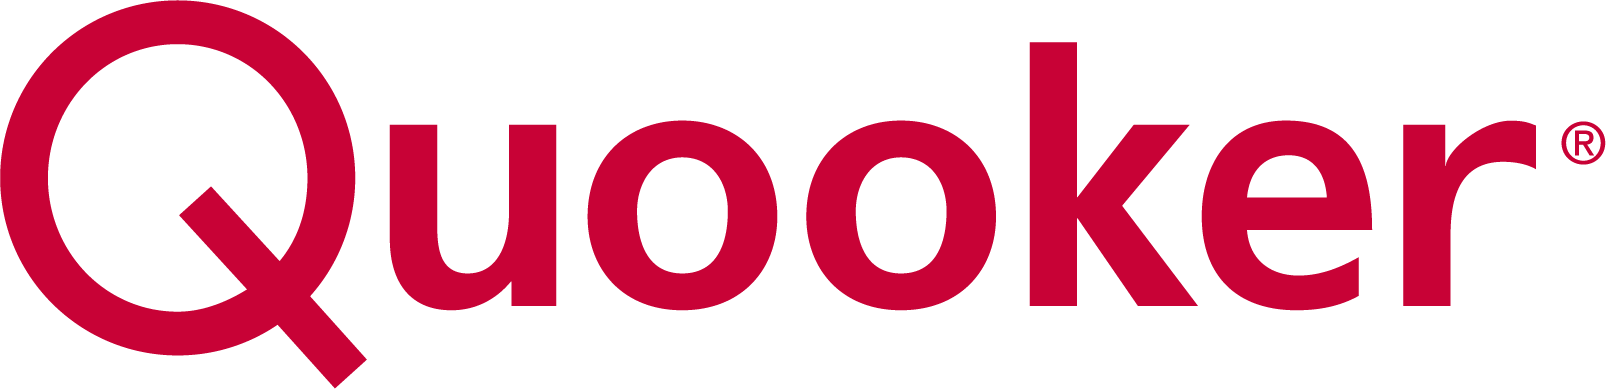 logo-quooker-link-unterseite-moebel-coldewey